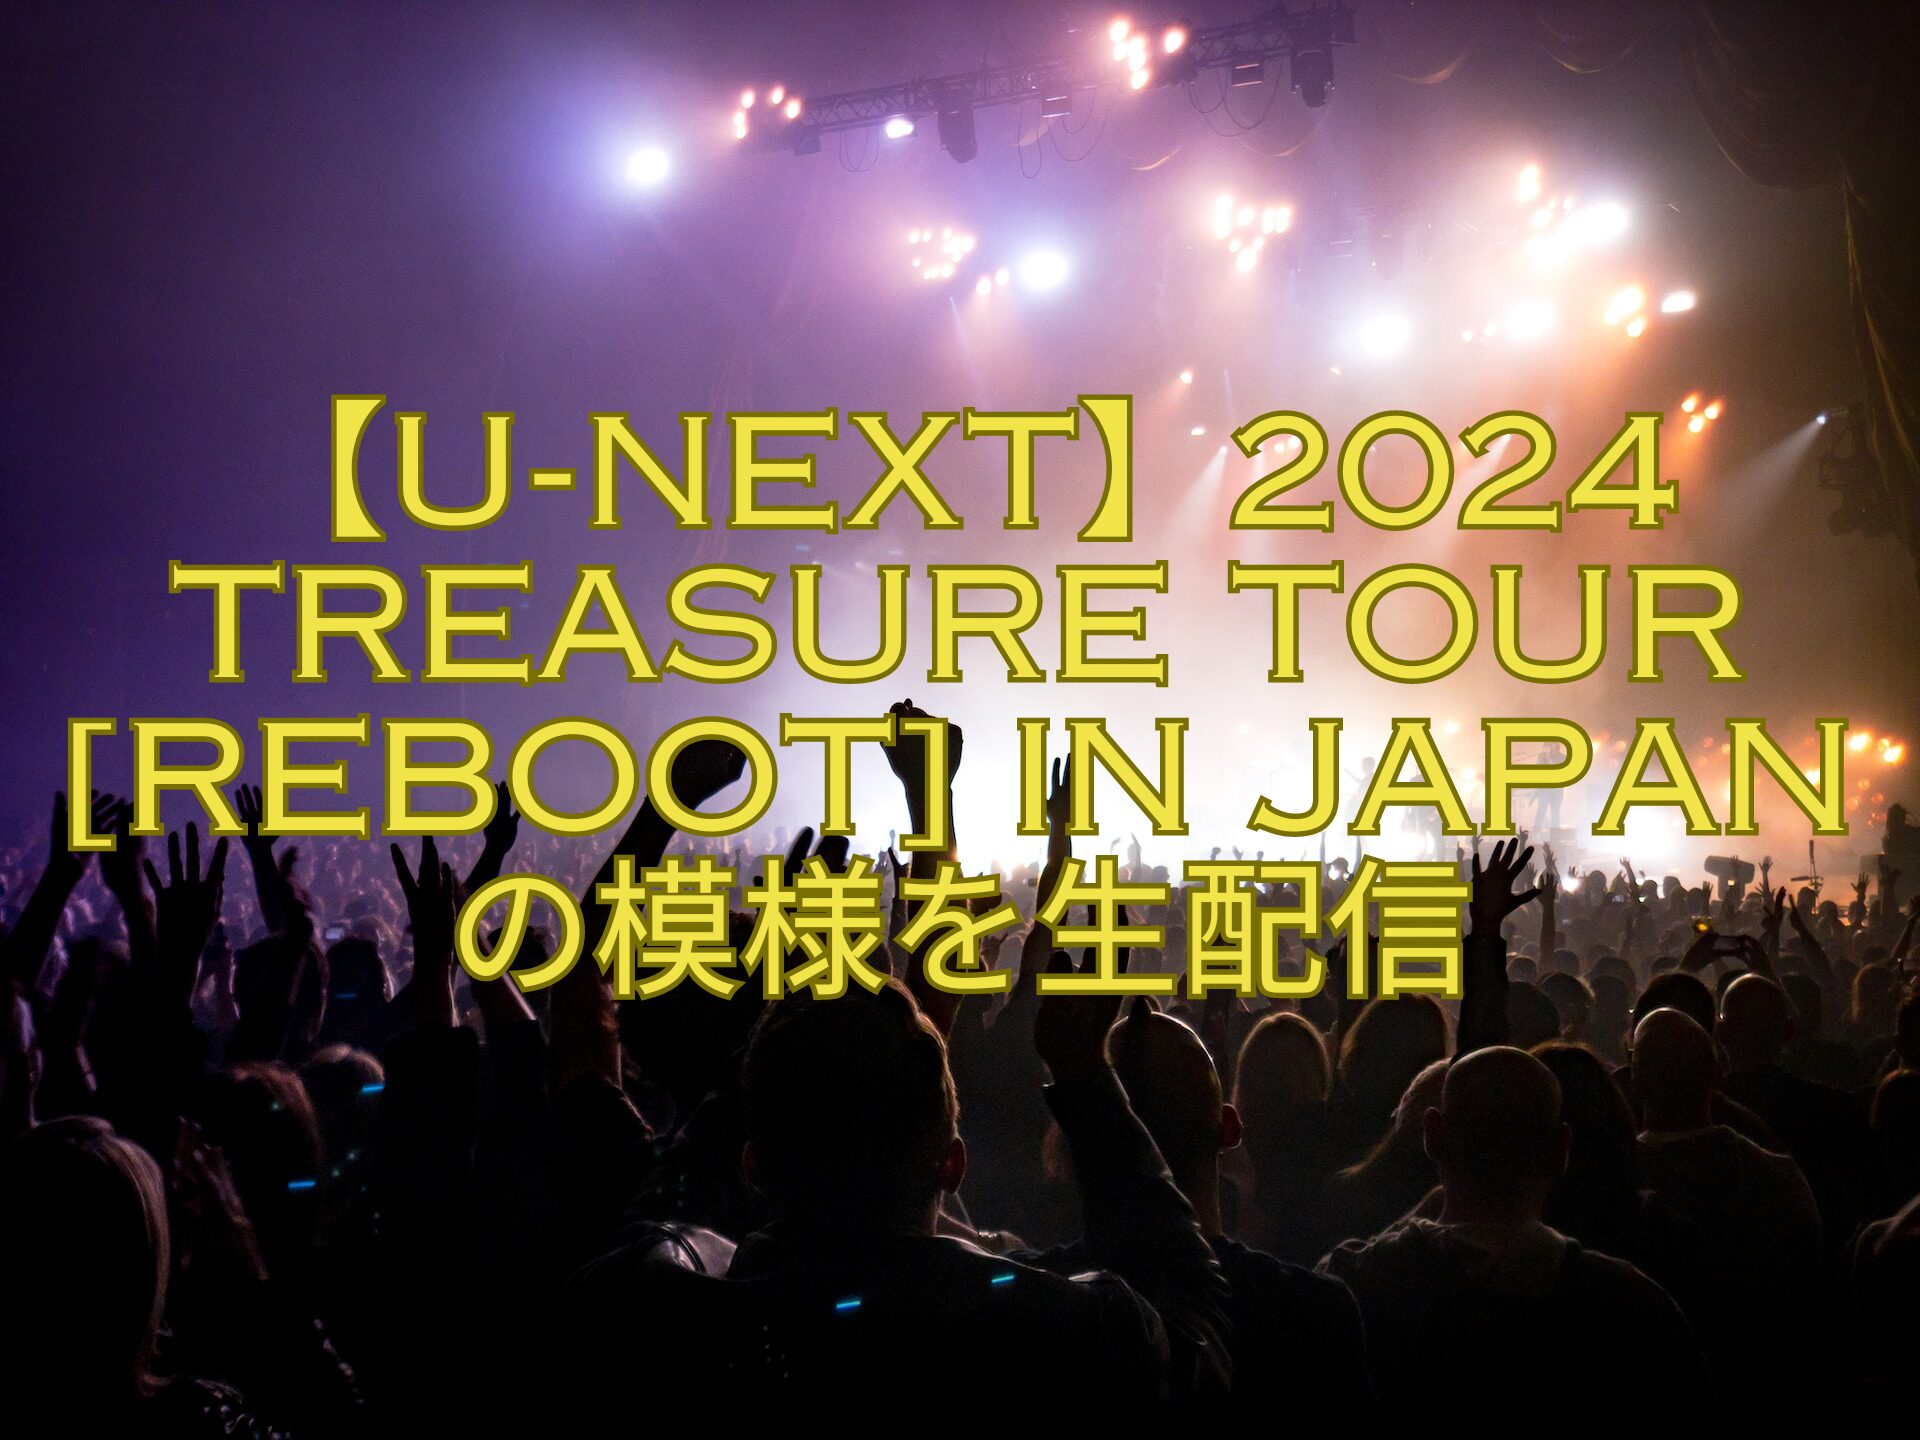 【U-NEXT】2024-TREASURE-TOUR-REBOOT-IN-JAPANの模様を生配信